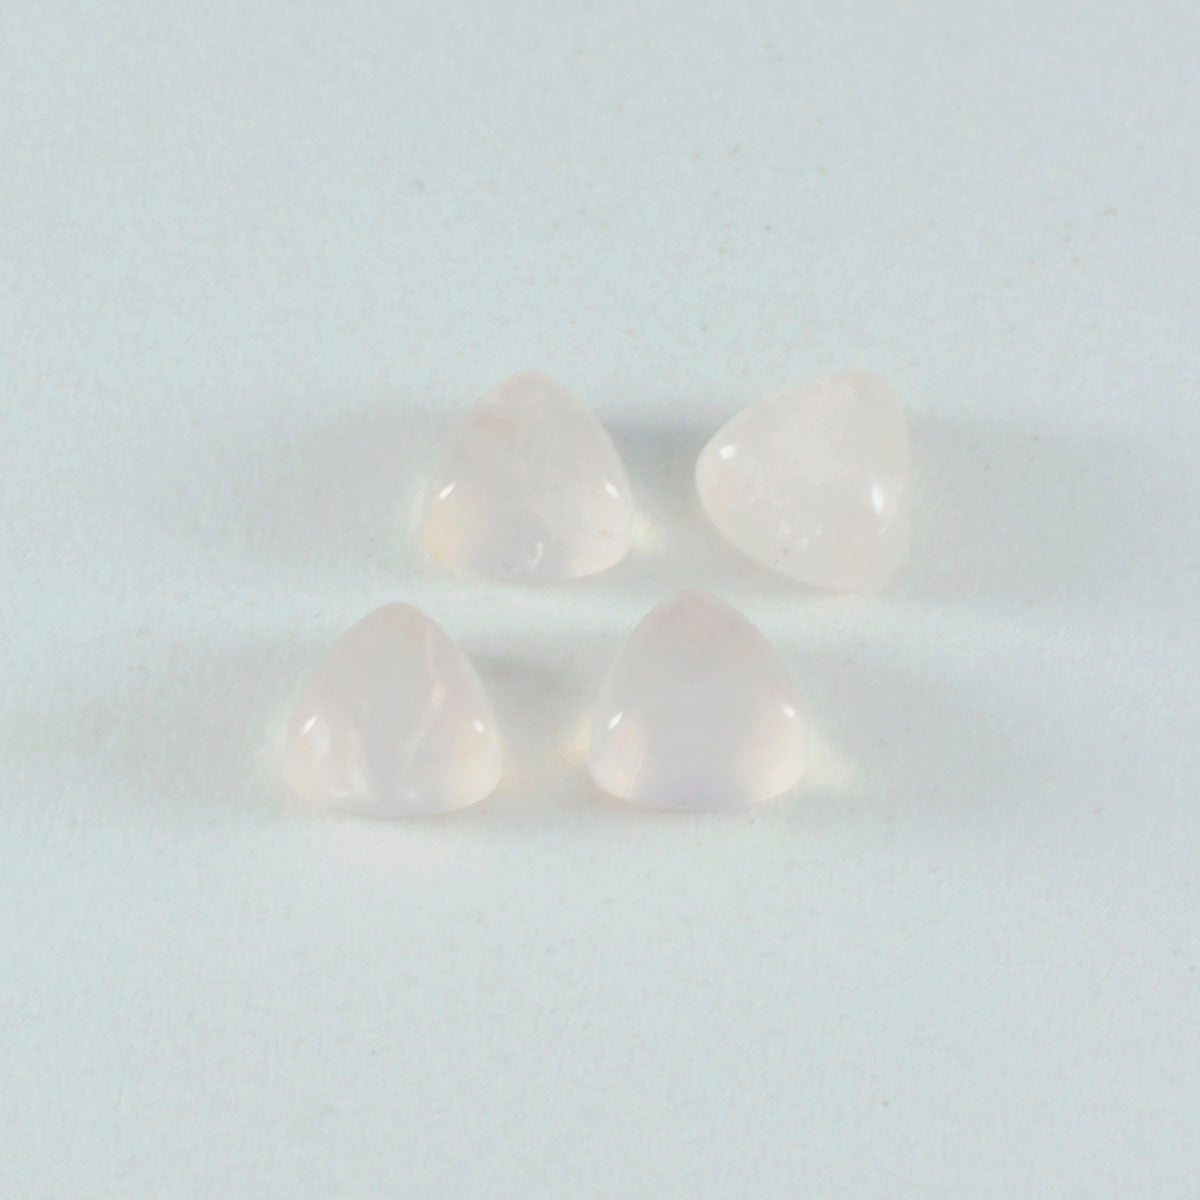 Riyogems 1PC roze rozenkwarts cabochon 11x11 mm biljoen vorm A1 kwaliteitssteen